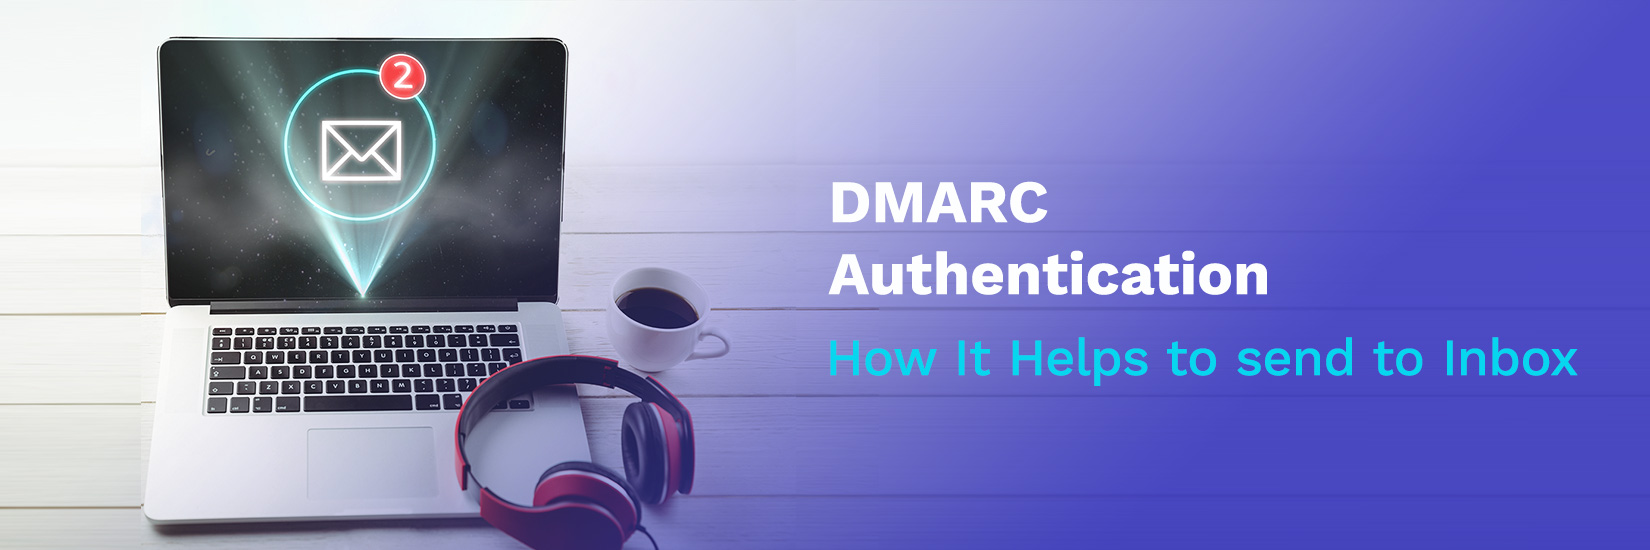 DMARC Authentication